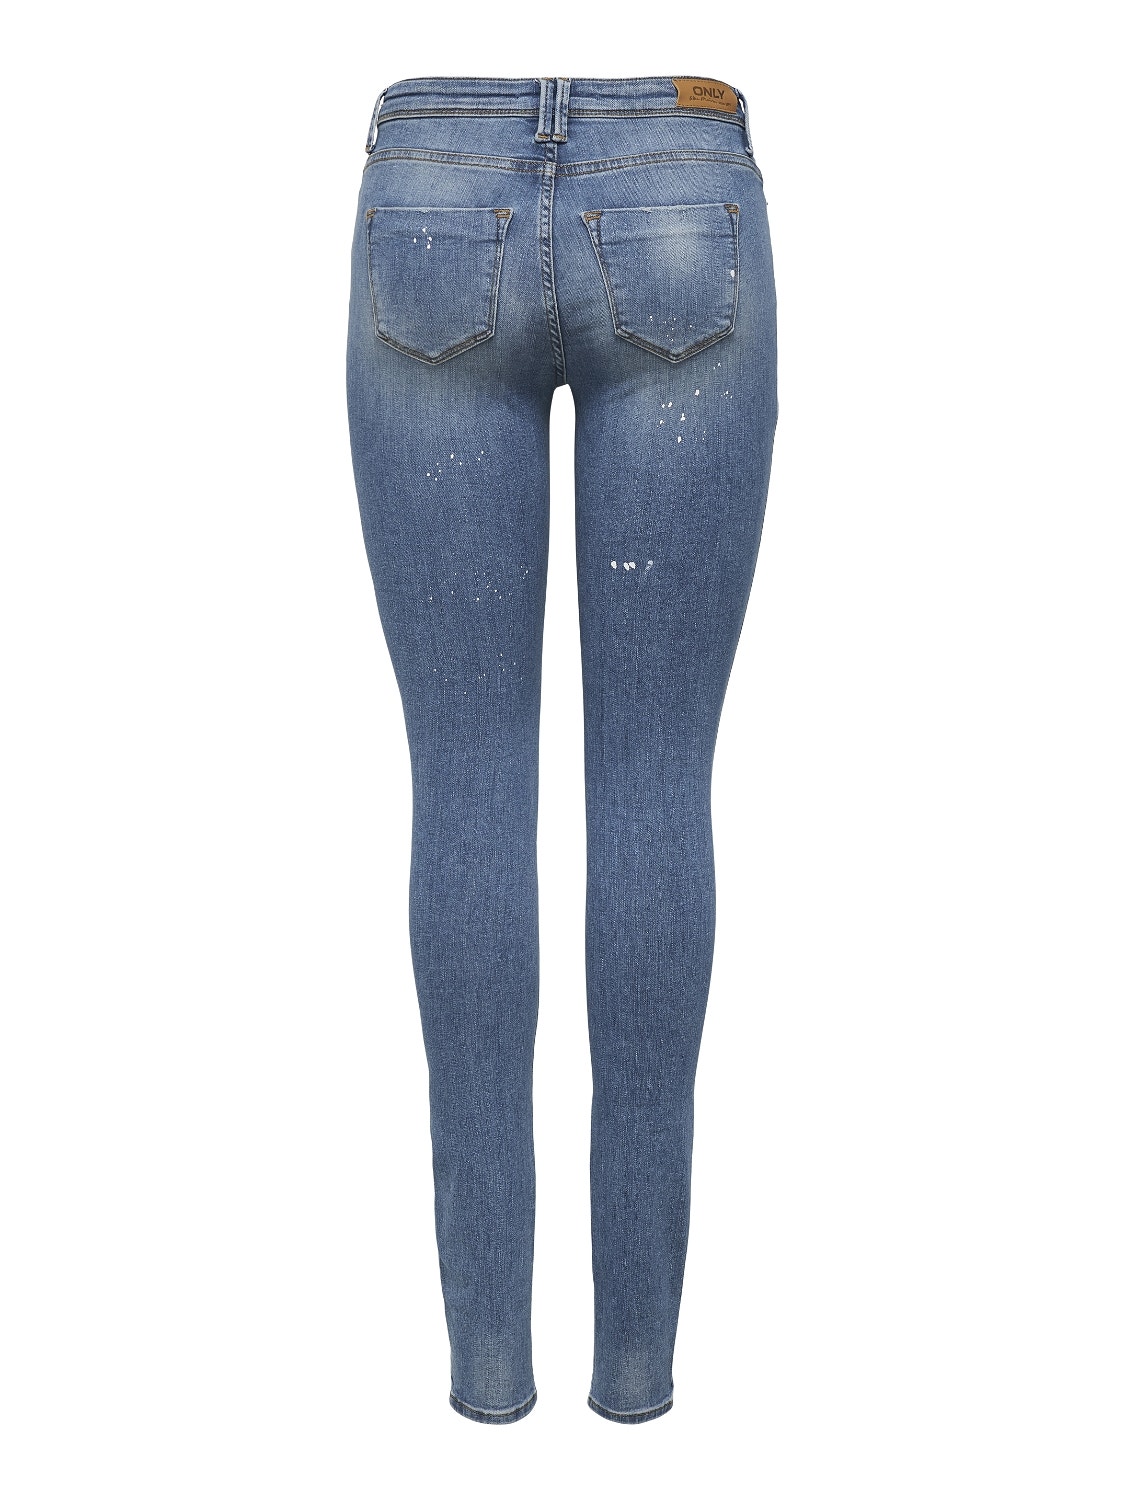 ONLY ONLShape Life Reg Destroyed Skinny Fit Jeans -Medium Blue Denim - 15210403